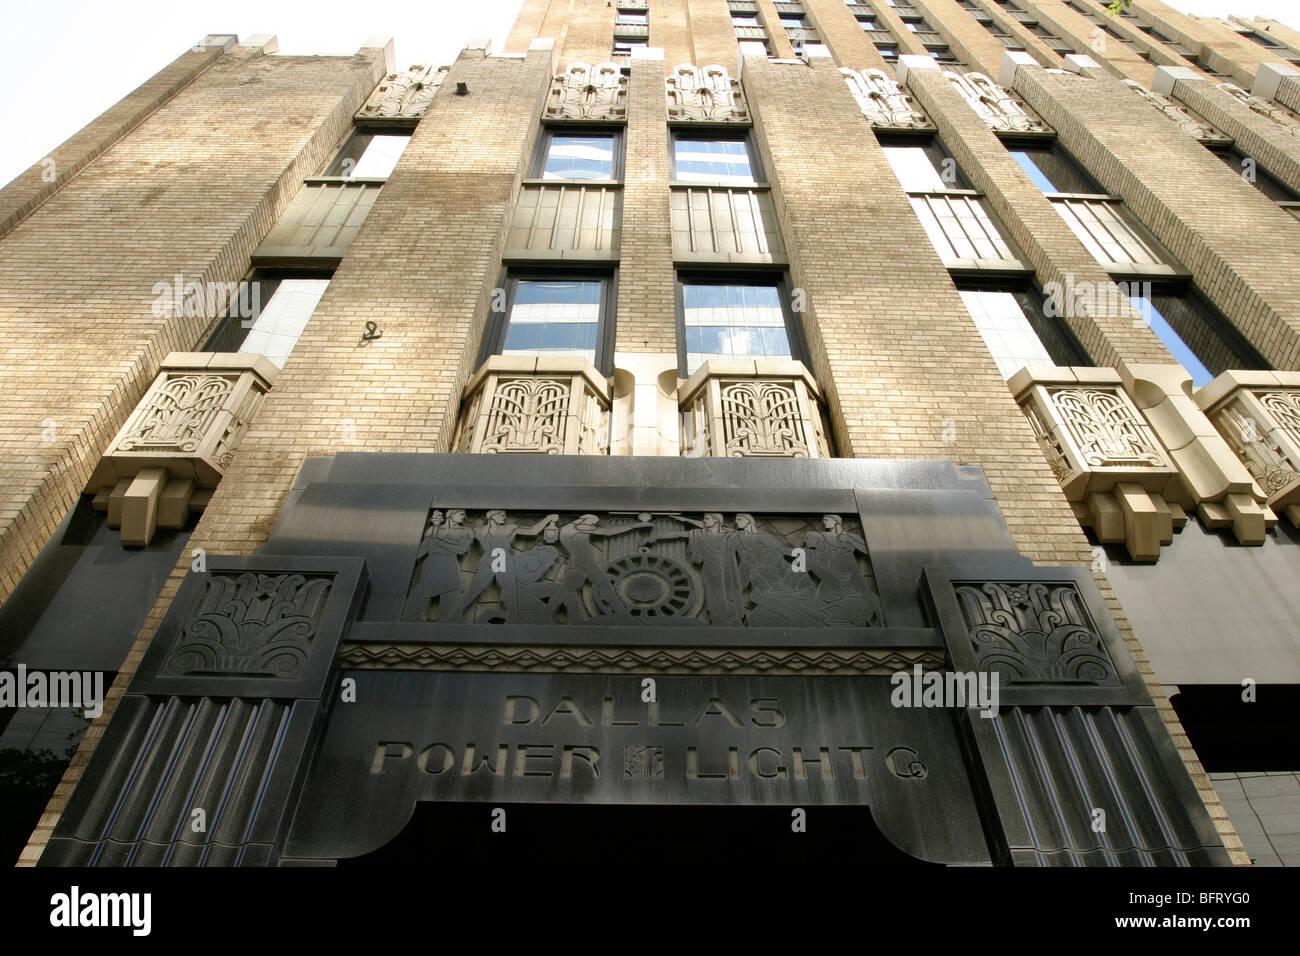 Die Dallas Power and Light Building erbaut 1931. Beispiel für die Art-déco-Bewegung. Jetzt Appartementhaus. Stockfoto